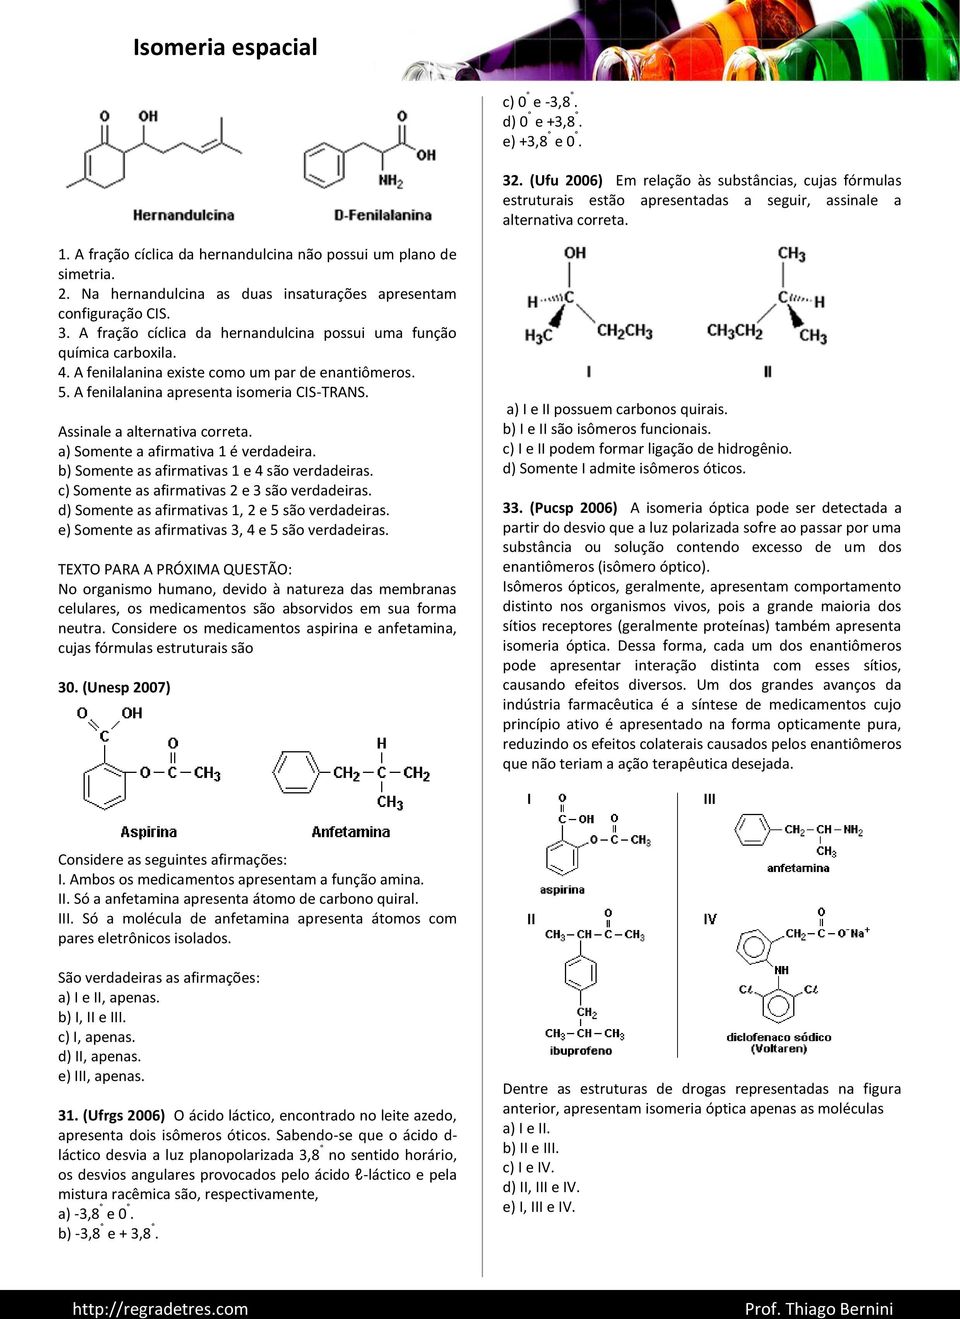 A fração cíclica da hernandulcina possui uma função química carboxila. 4. A fenilalanina existe como um par de enantiômeros. 5. A fenilalanina apresenta isomeria CIS-TRANS.